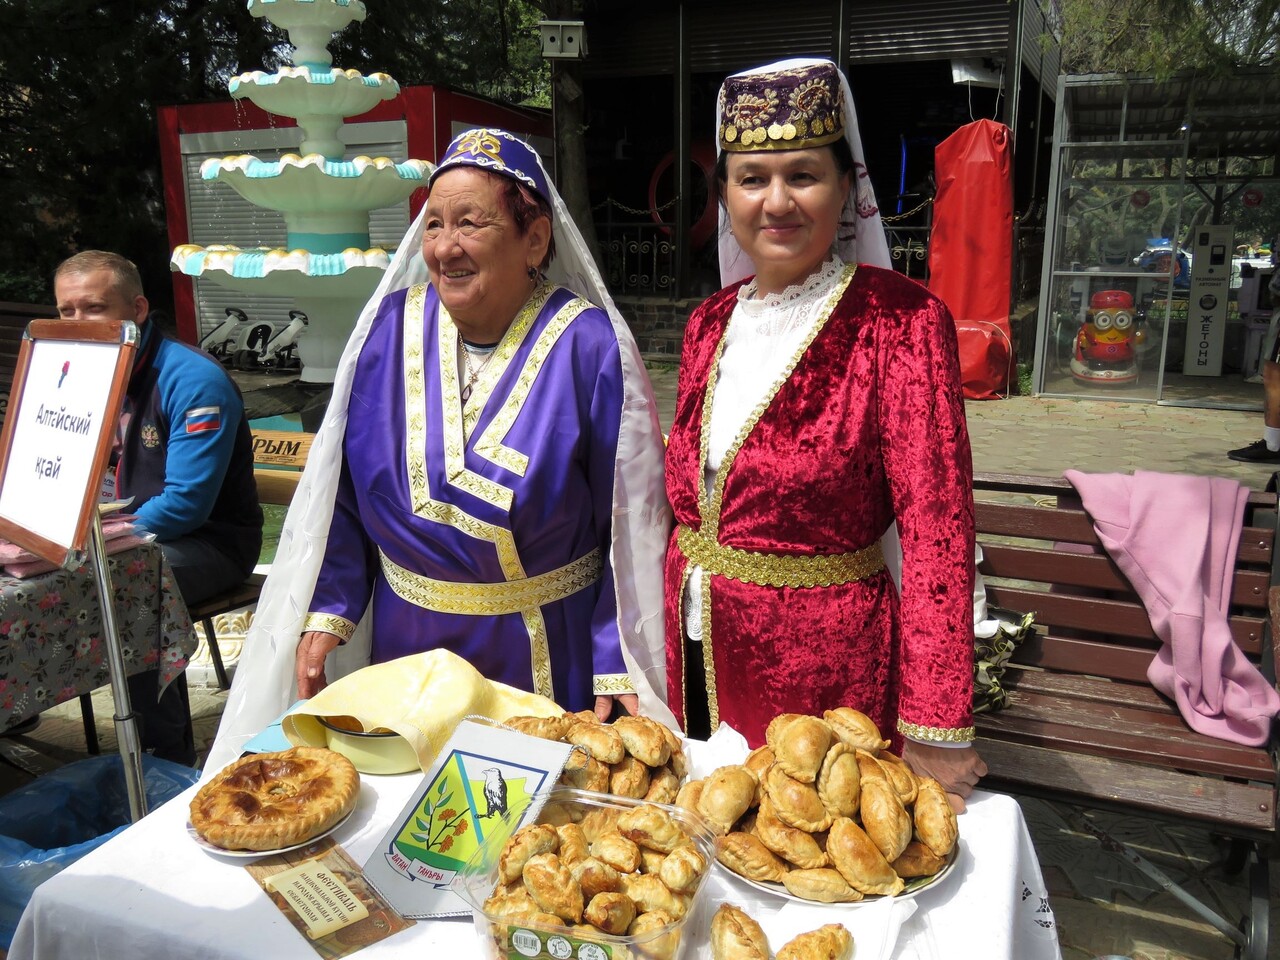 Фестиваль национальной кухни